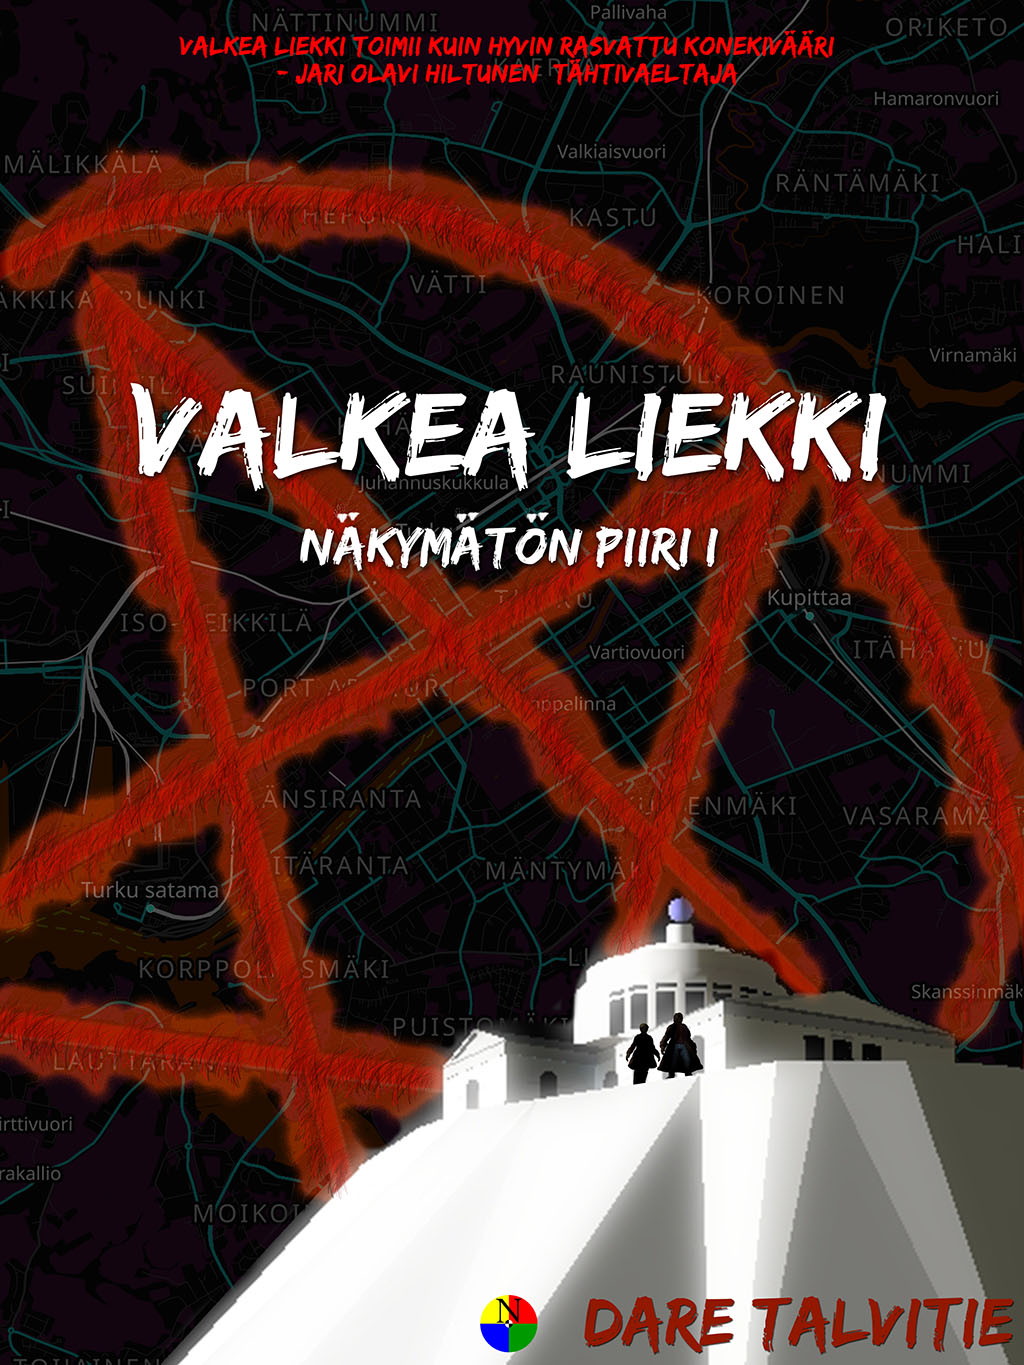 Dare Talvitie: Valkea liekki (Finnish language, 2018)